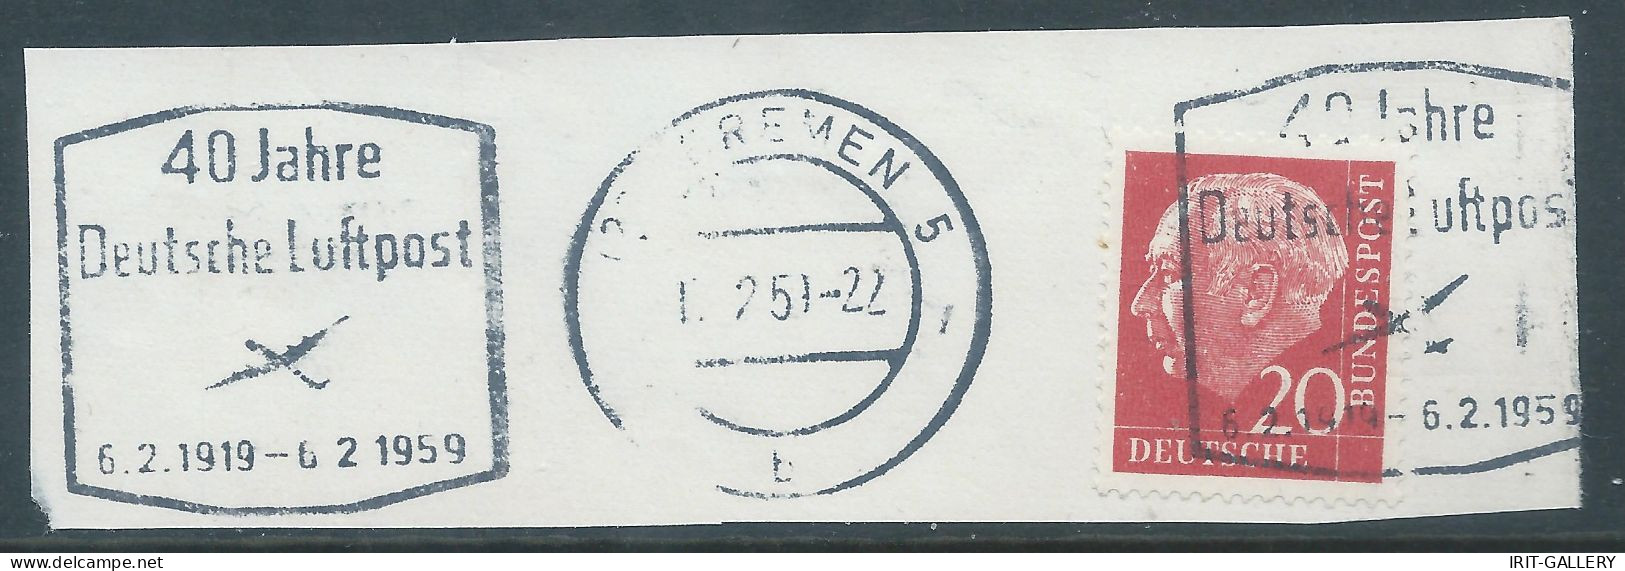 Germany-Deutschland,On Cut Paper1954 Stamp 20pgCarmine Fluorescent Paper,obliterated 40Jahre1919-1959,Deutsche,Luft Post - Gebraucht